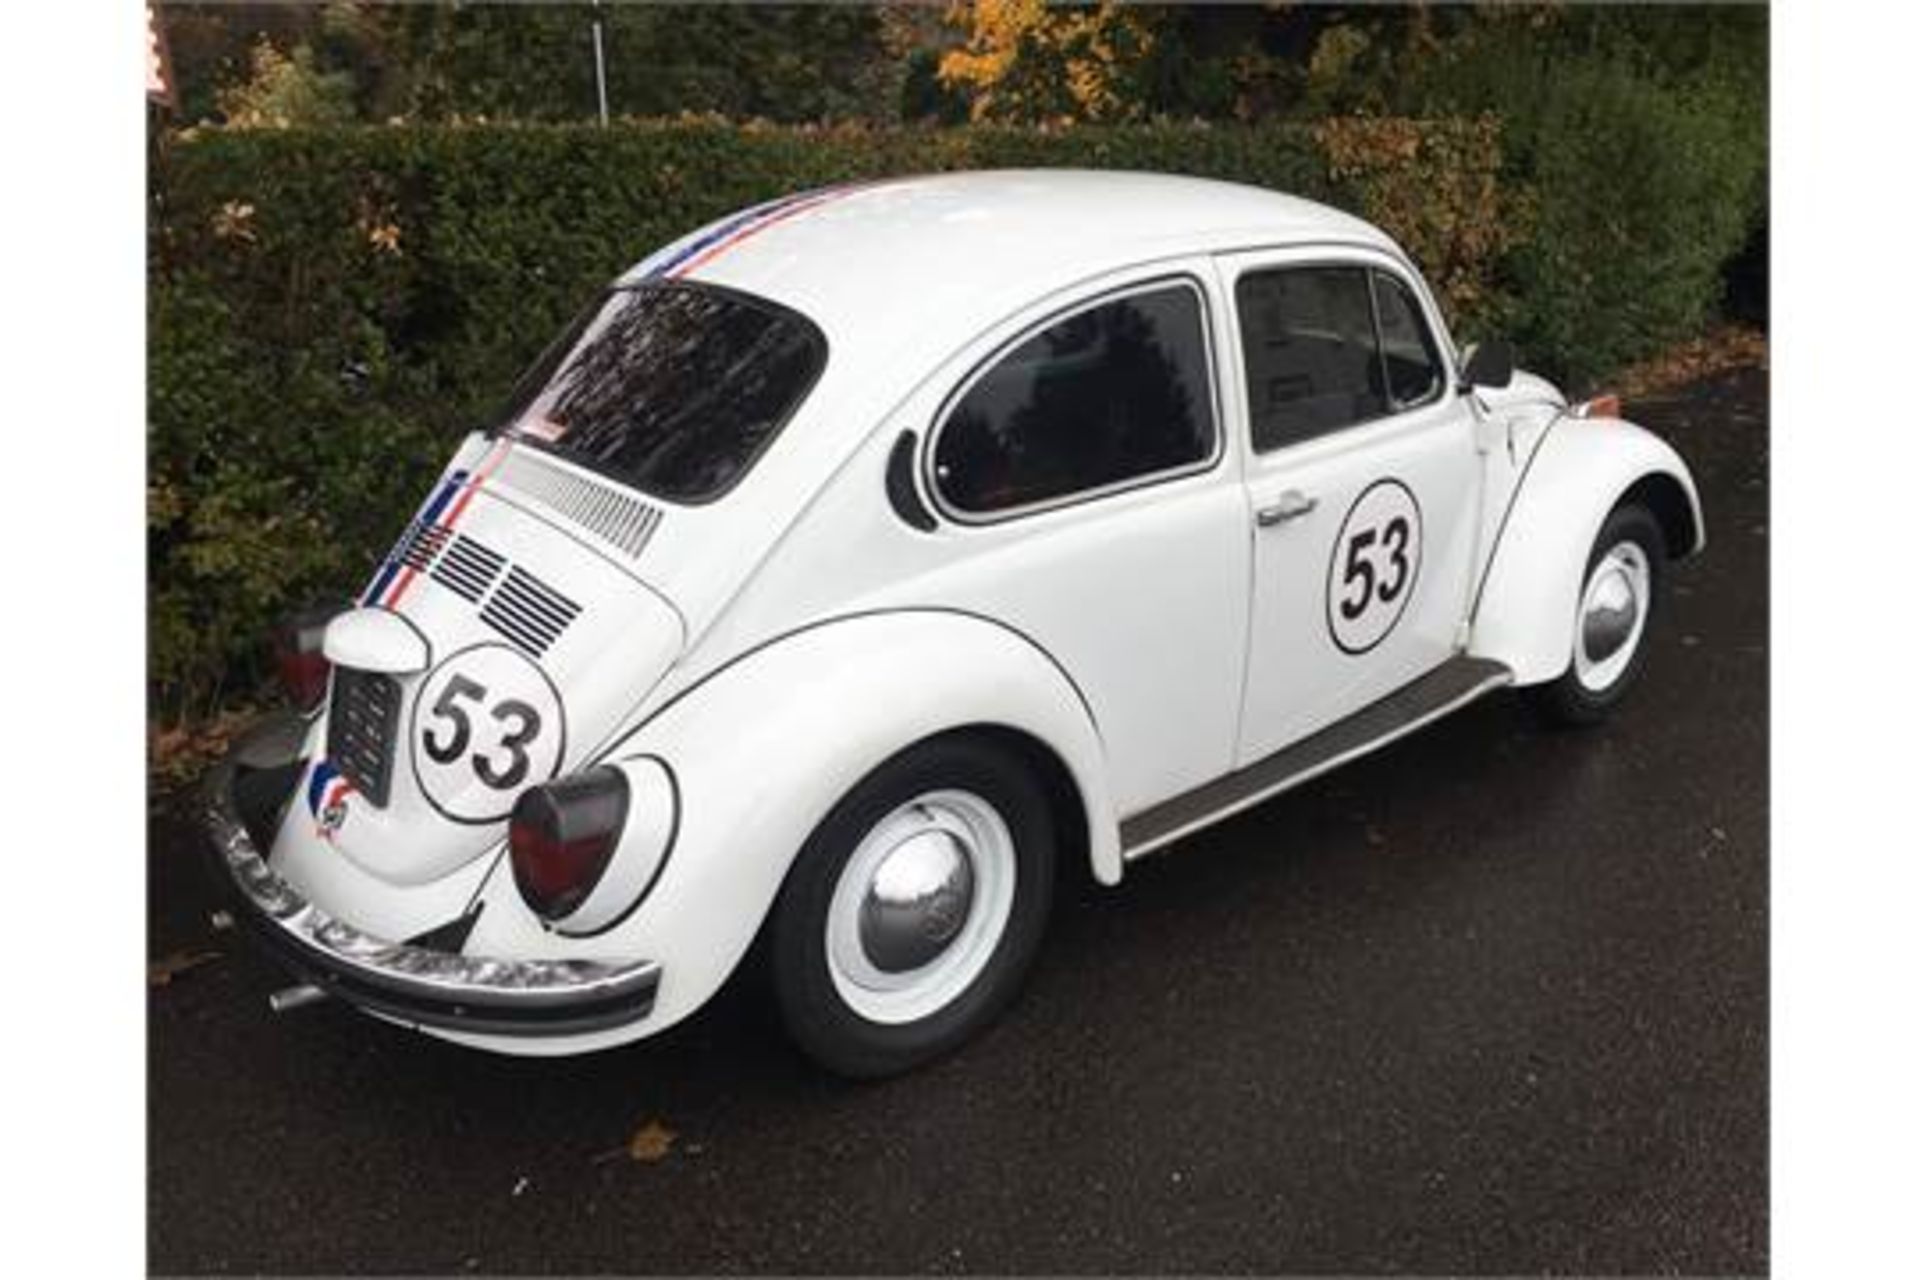 1974 VW Beetle - Herbie - Image 3 of 9